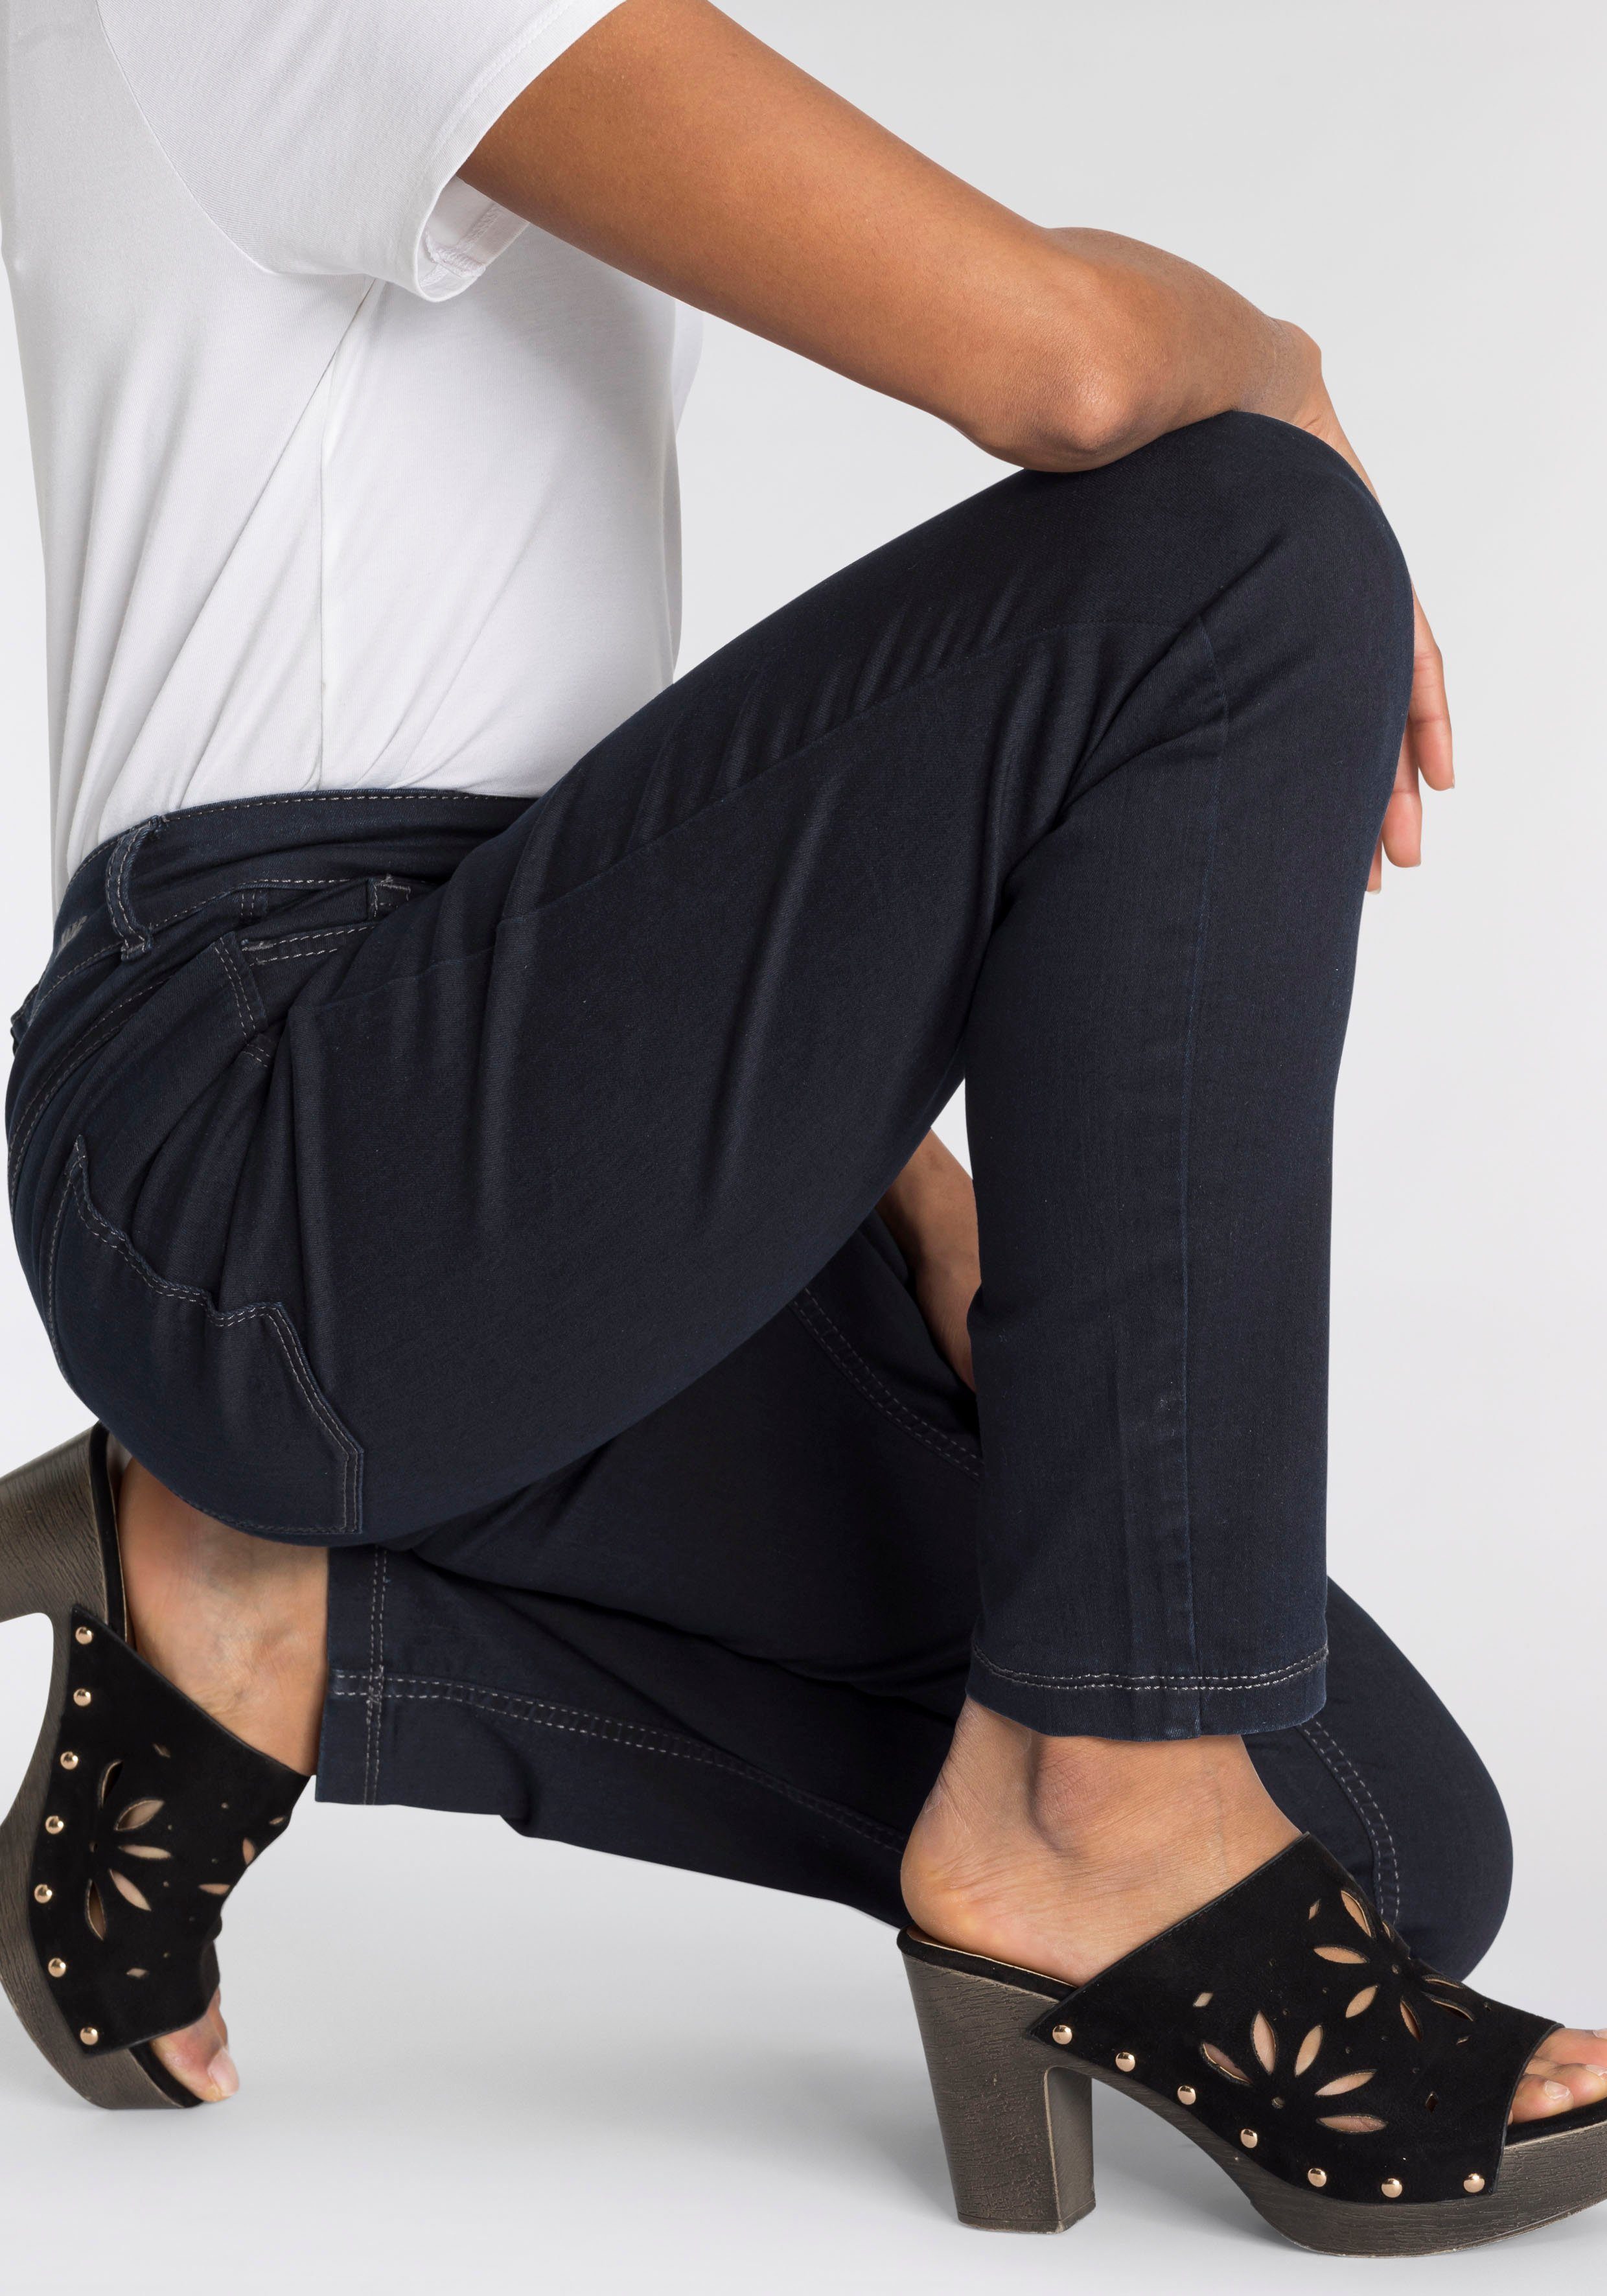 MAC Skinny-fit-Jeans Hiperstretch-Skinny Power-Stretch sitzt blue ganzen Tag rinsed bequem Qualität dark den